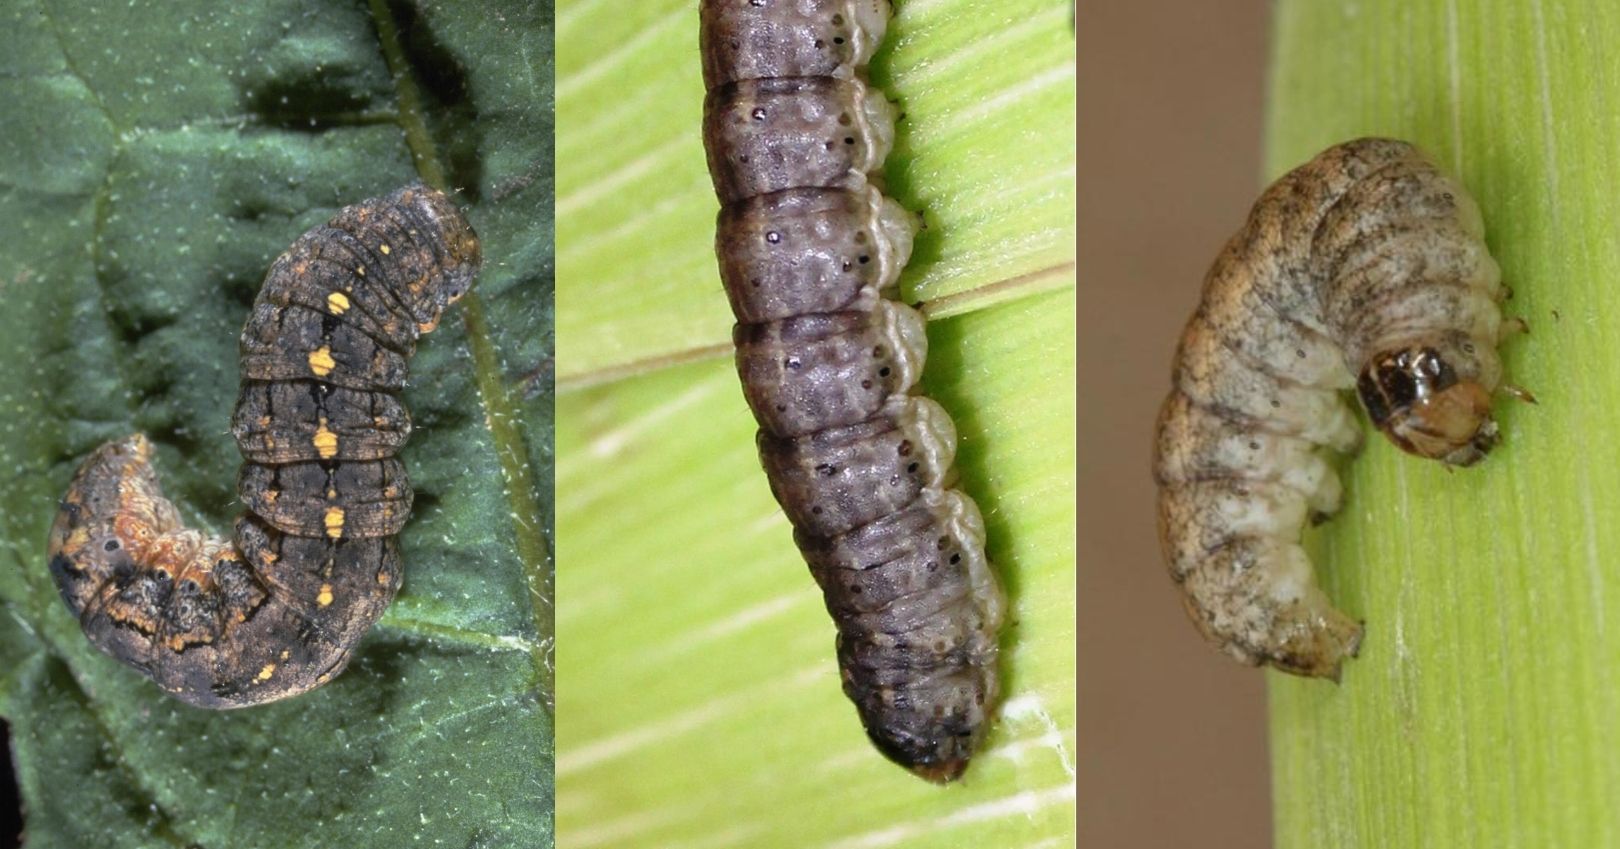 Variegated Cutworm, Black Cutworm, and Western Bean Cutworm (bugwood.org)